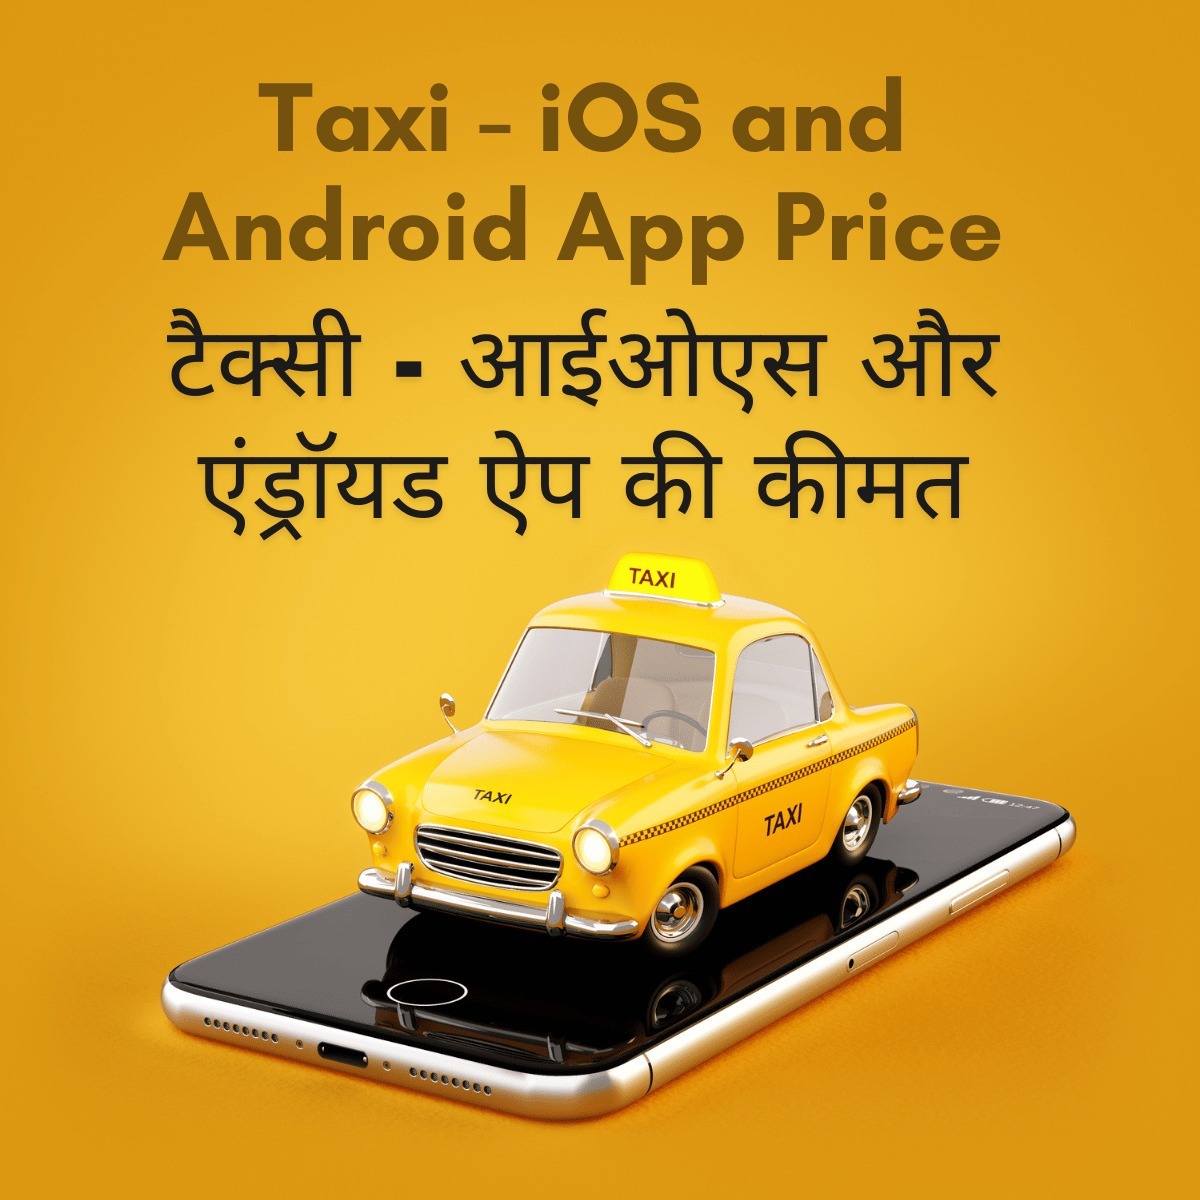 Taxi - iOS and Android App Price

टैक्सी - आईओएस और एंड्रॉयड ऐप की कीमत